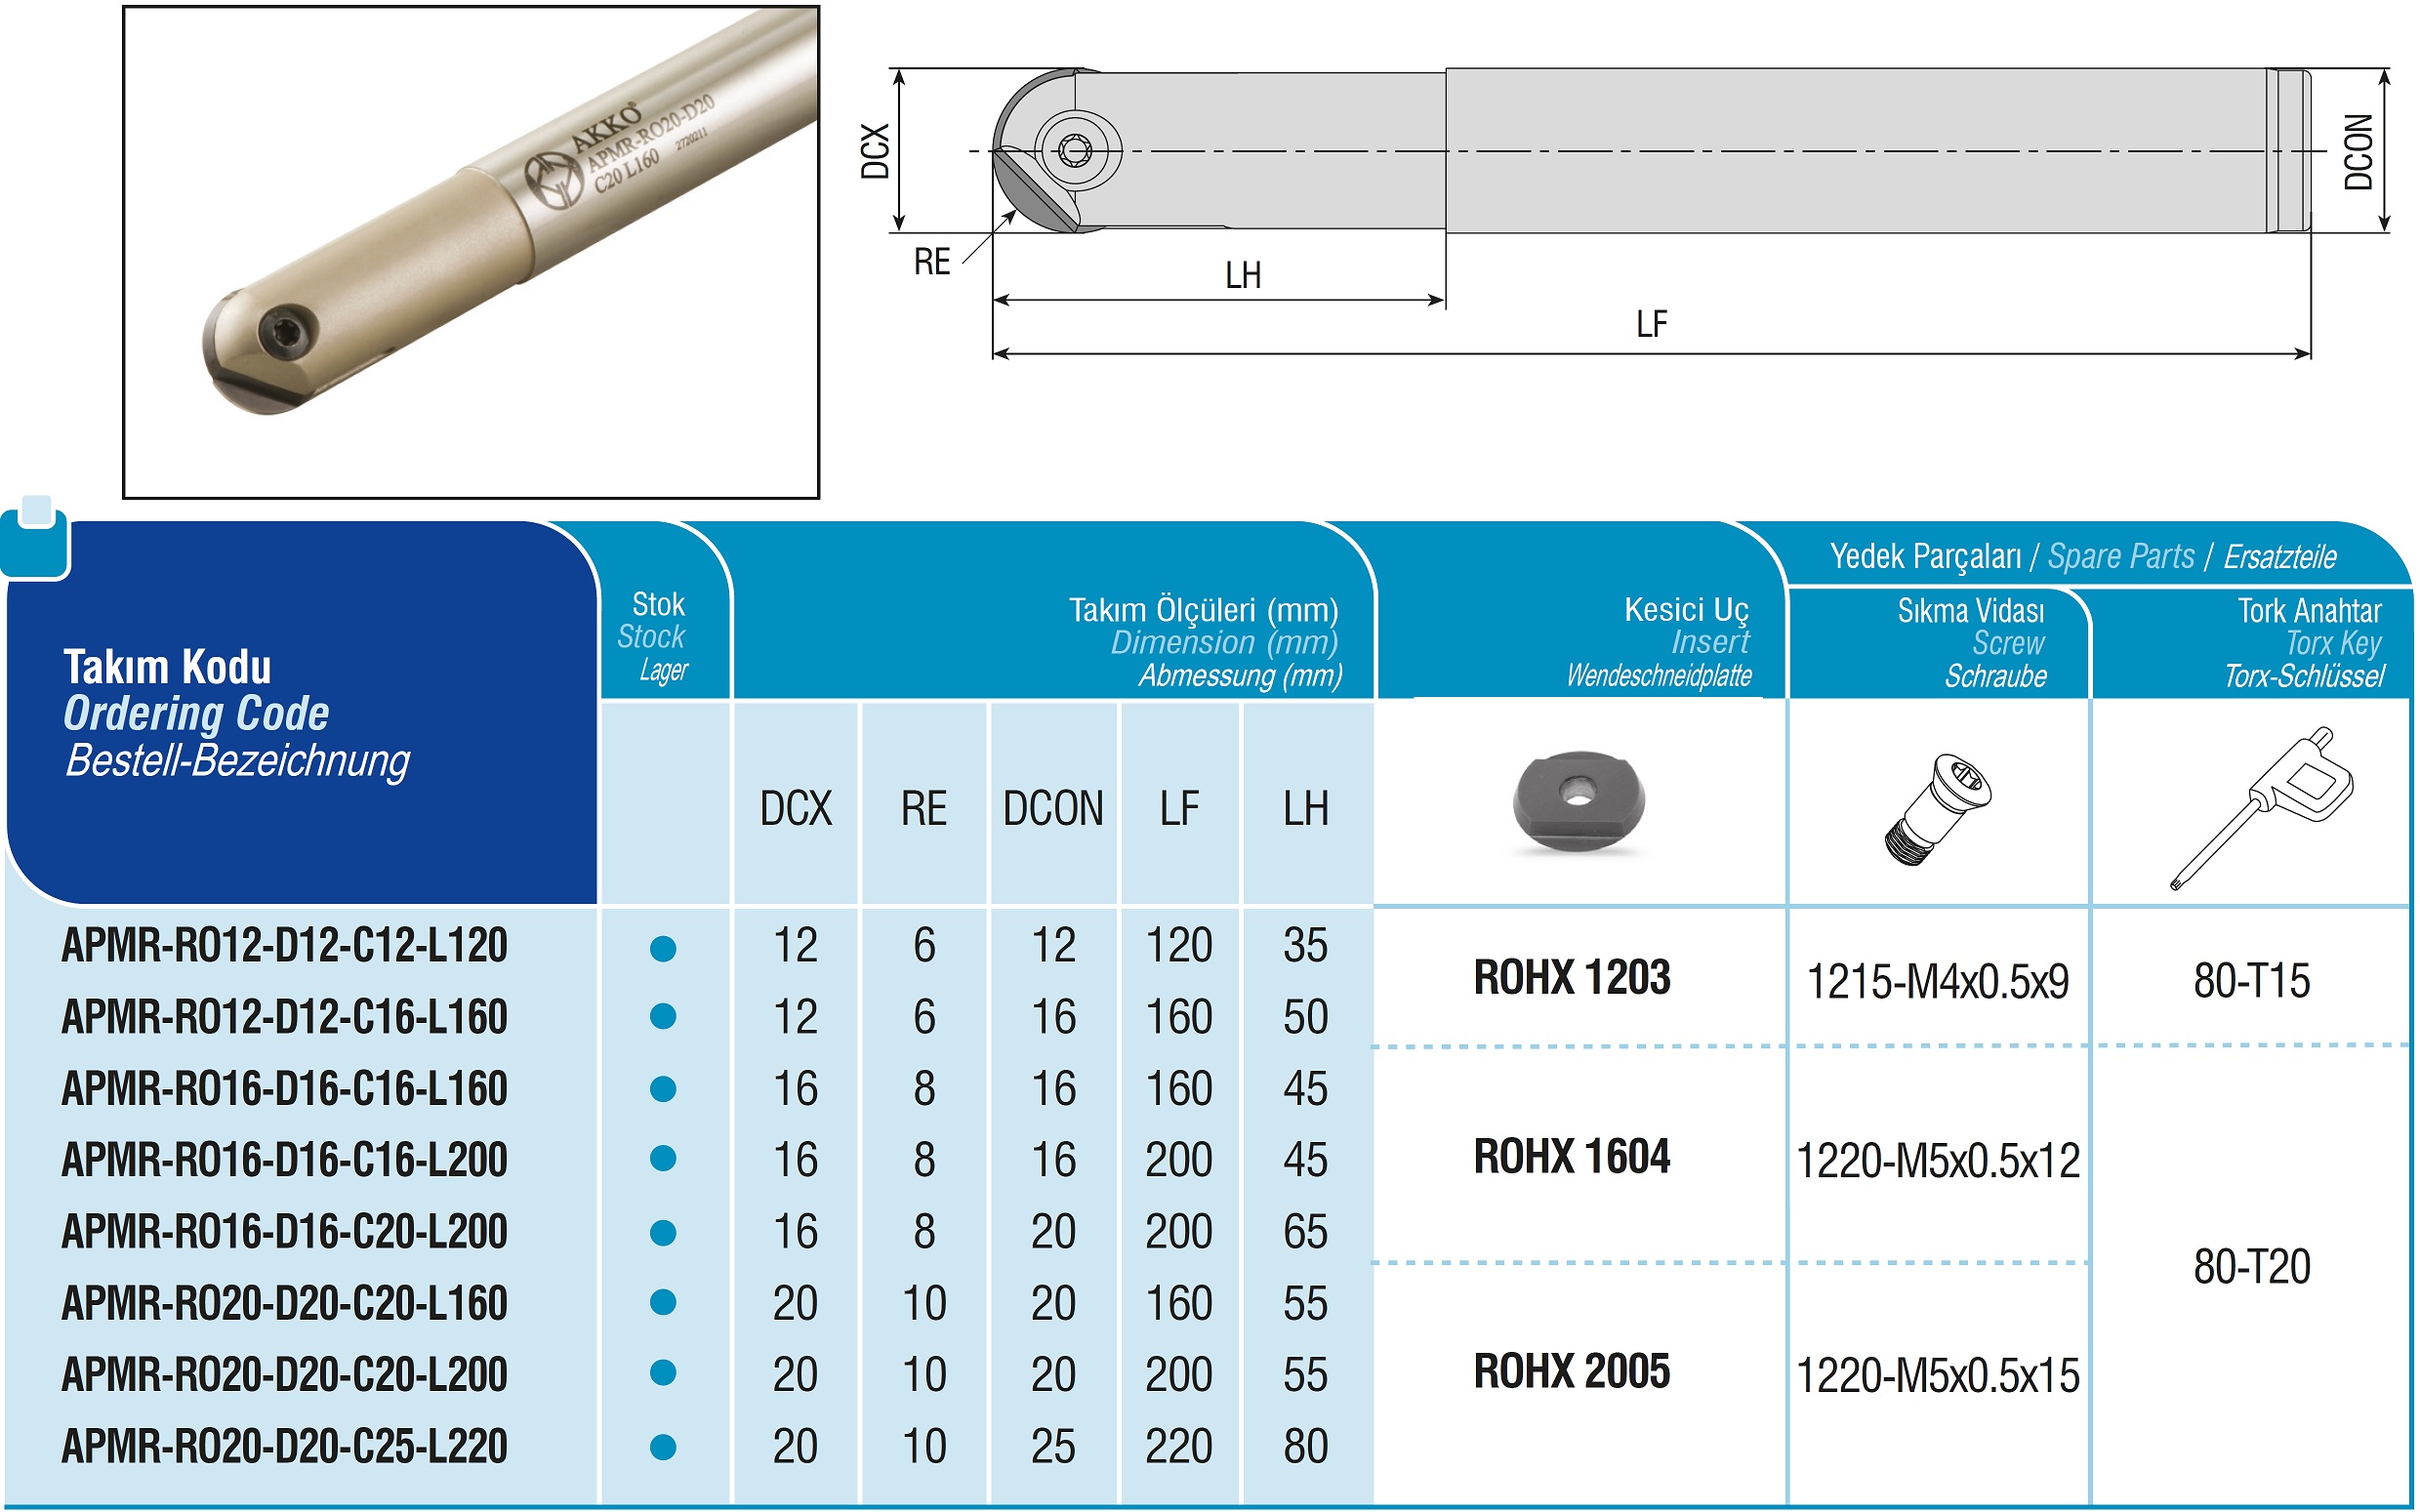 AKKO-Kugelkopierfräser für Wendeplatten, ø 12 mm, kompatibel mit ZCC ROHX 1203
Schaft-ø 12, ohne Innenkühlung